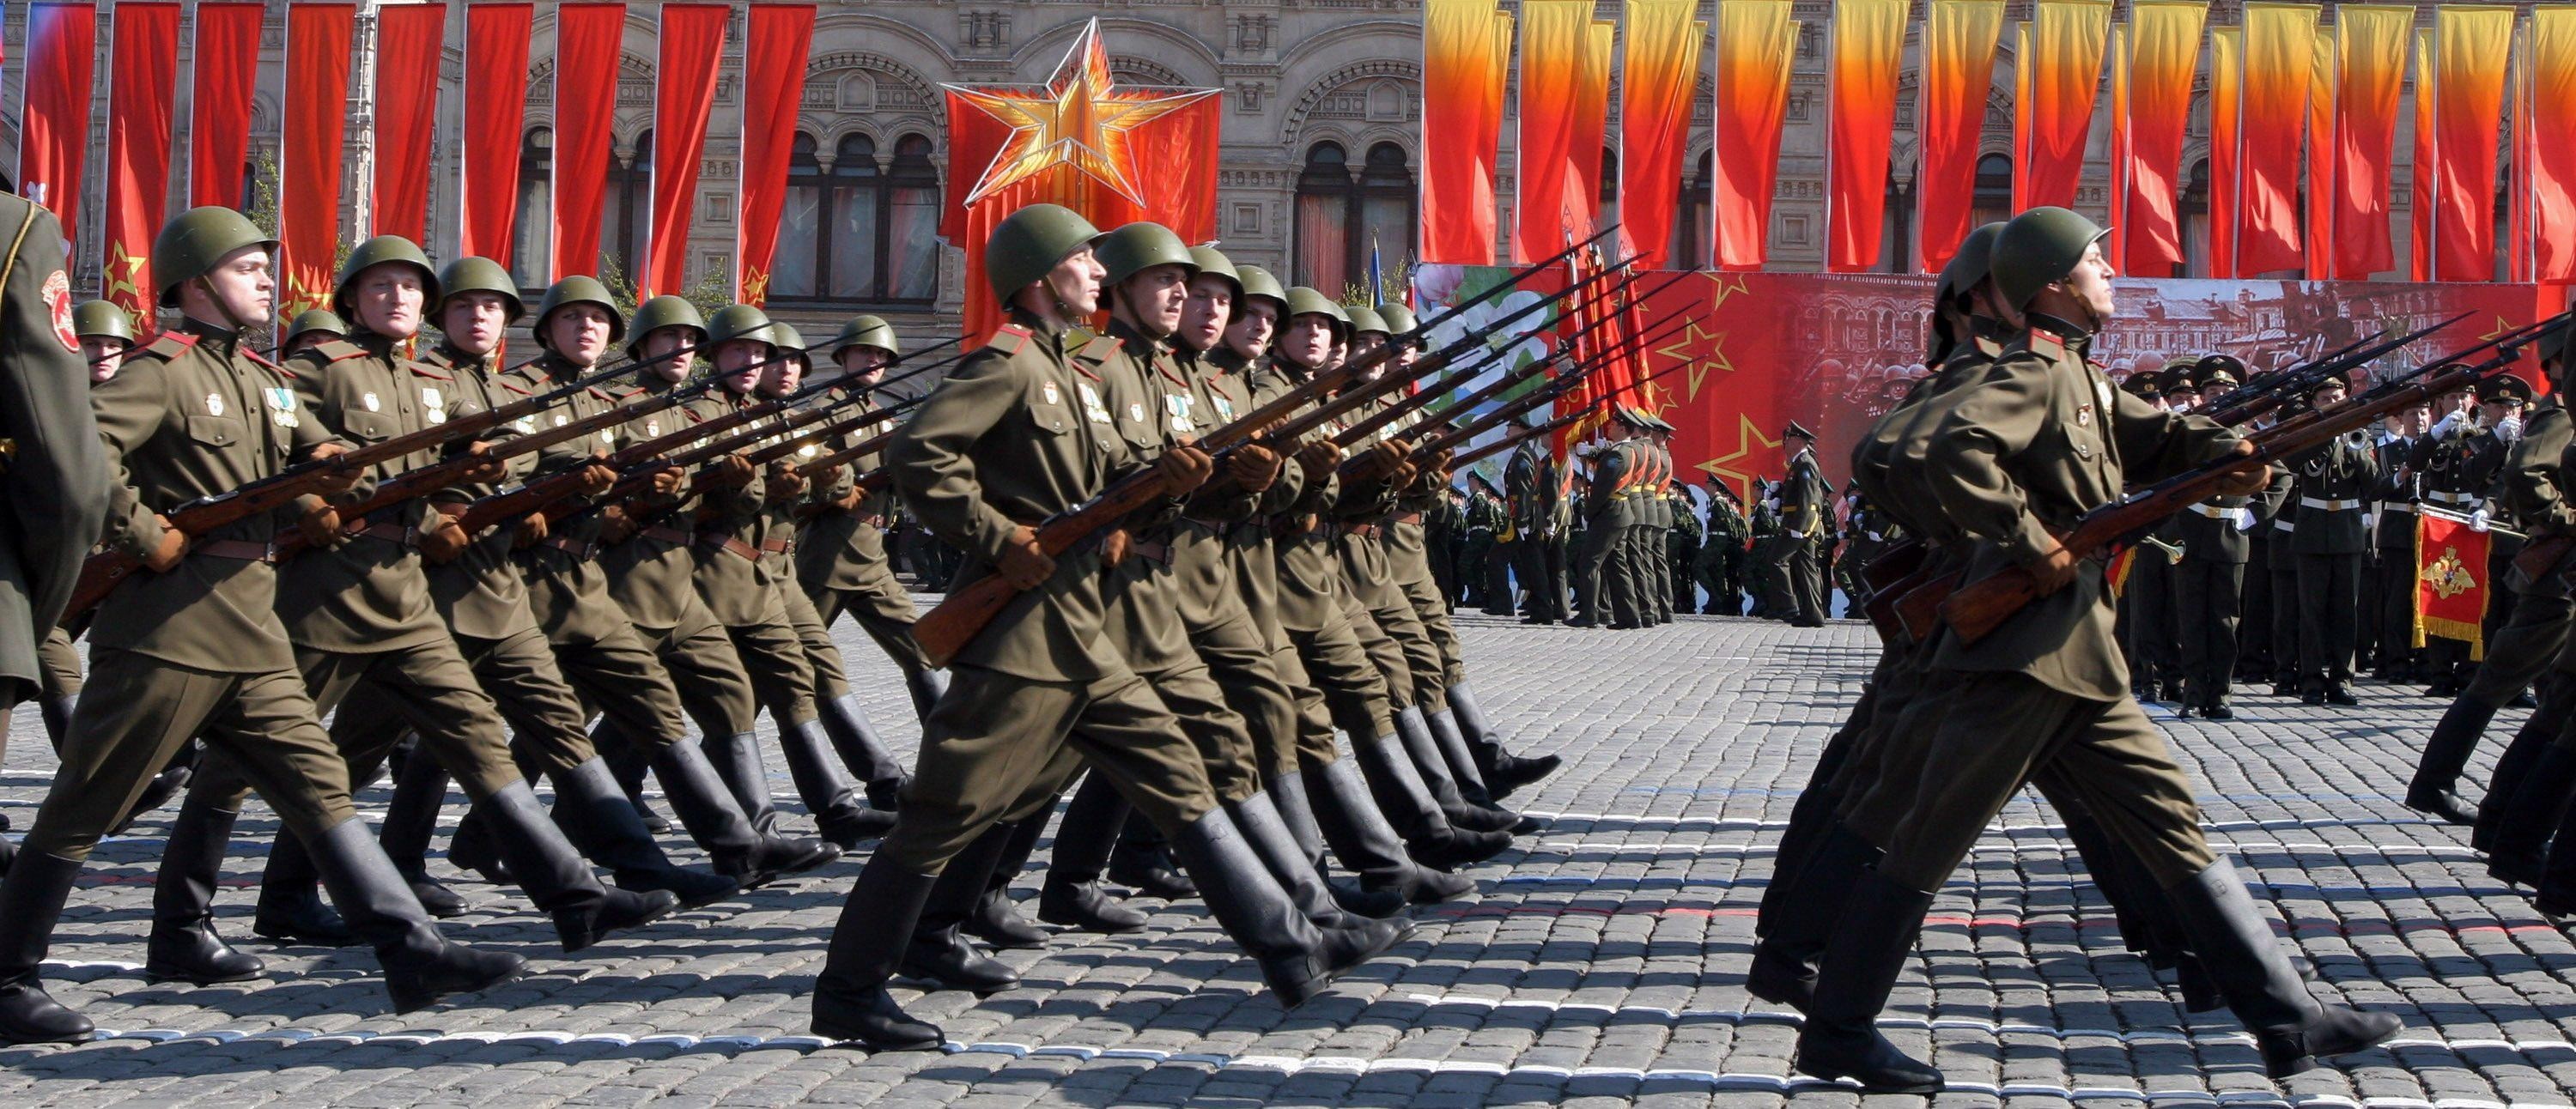 9 мая день победы солдат. Марширующие солдаты на красной площади 9 мая. Парад на красной площади 9 мая 1945. Солдаты парад Победы 1945. Российский солдат на параде.